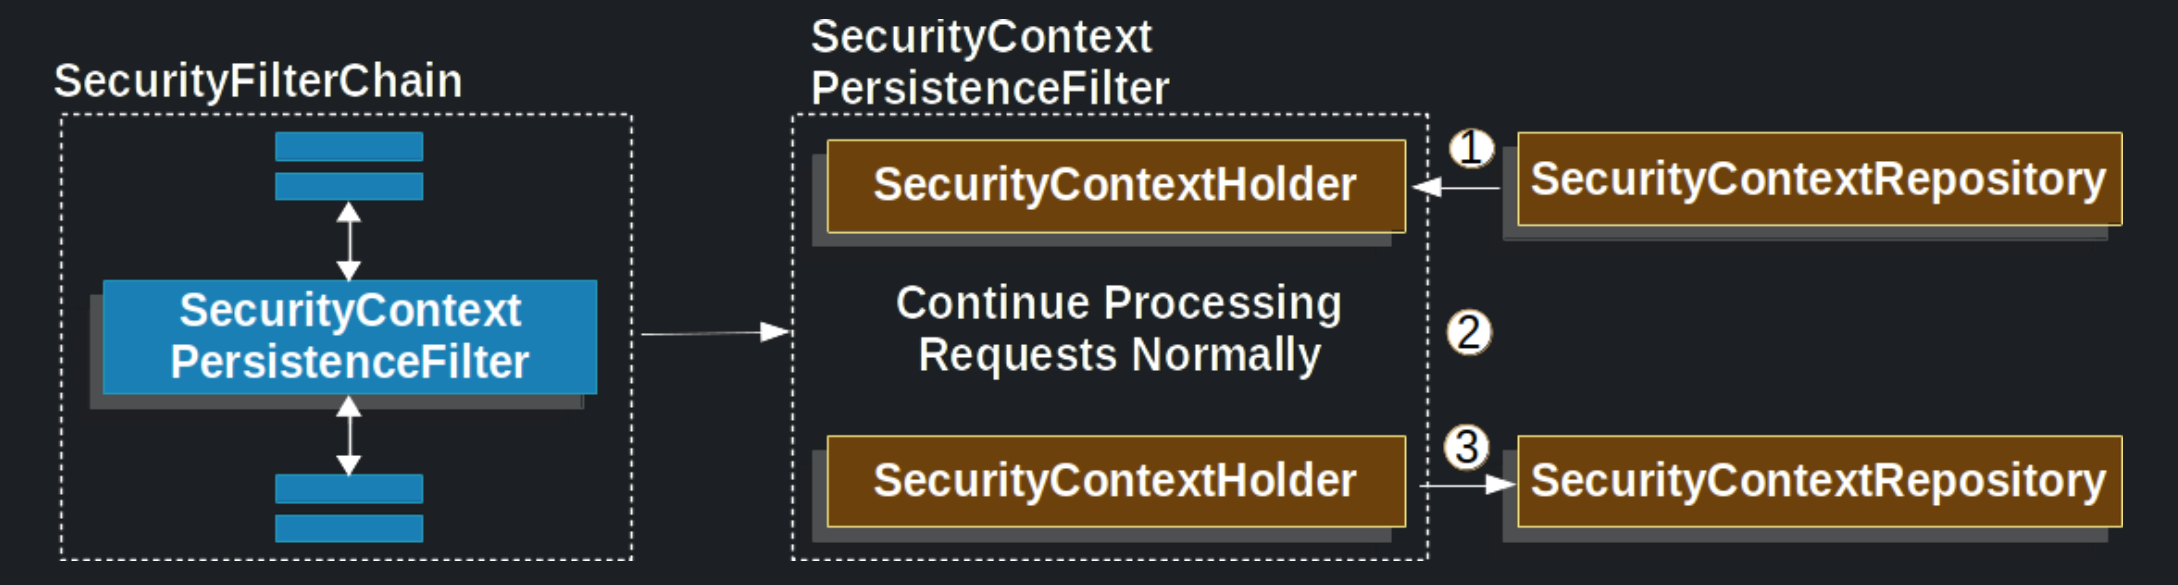 SecurityContextPersistenceFilter 동작 과정